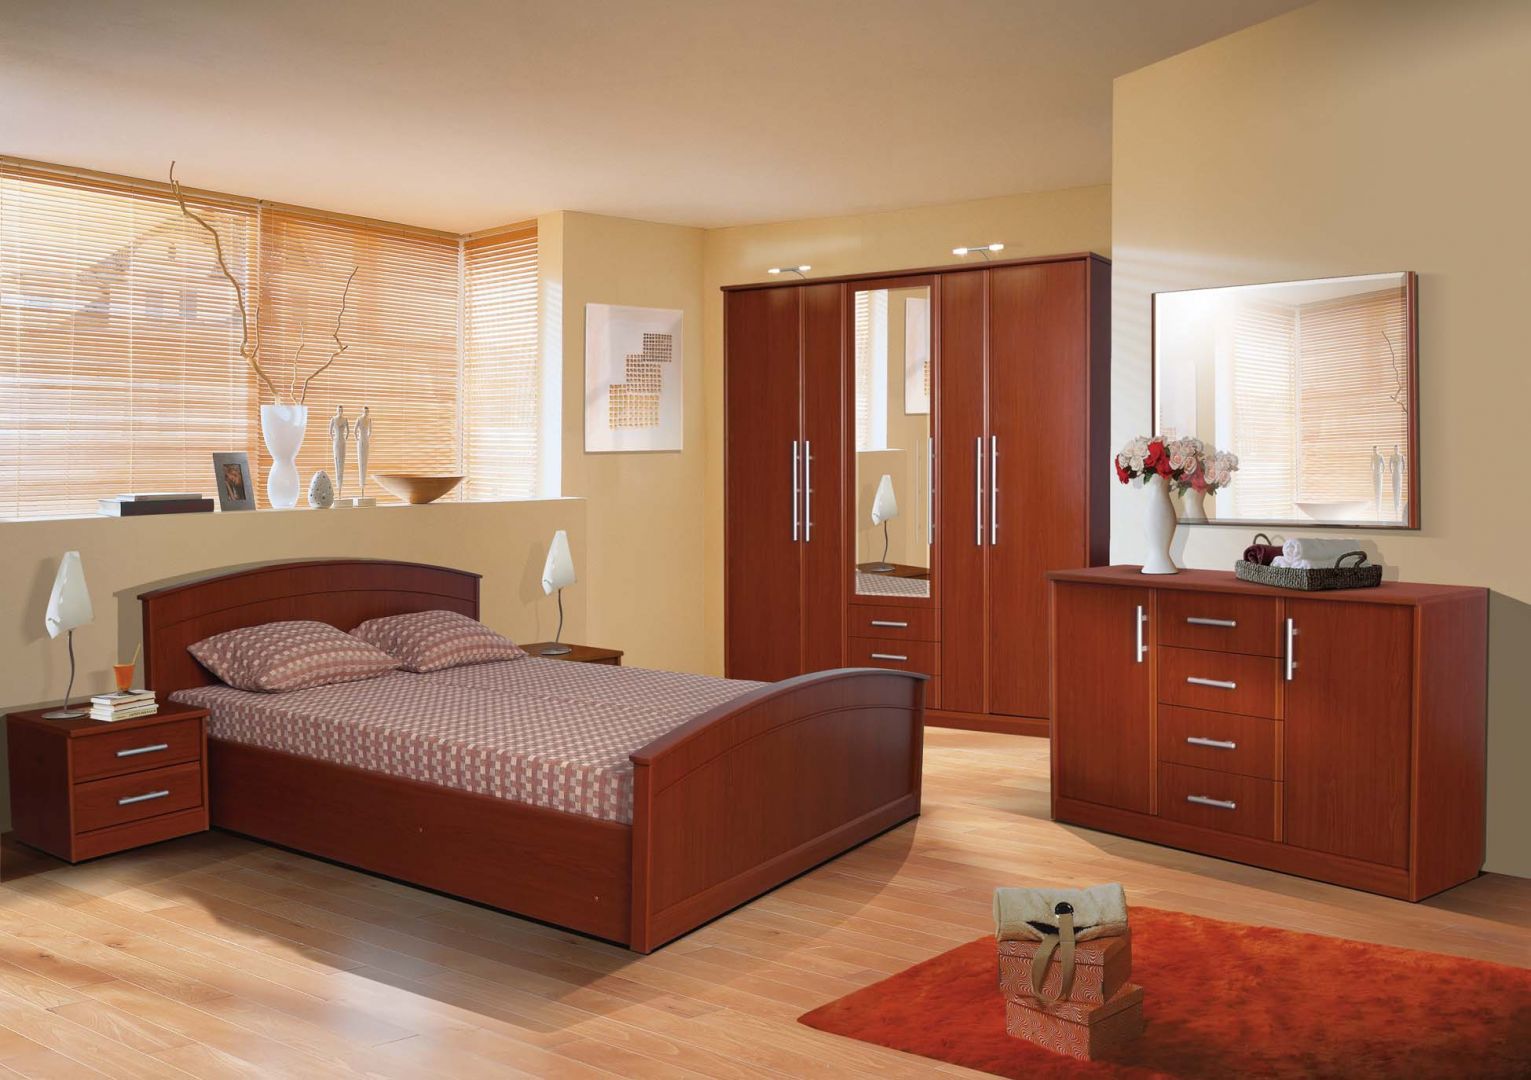 Klasyczne, drewniane łóżko Mega Meble, sypialnia Jazz, firmy Stolwit
Fot. Archiwum 